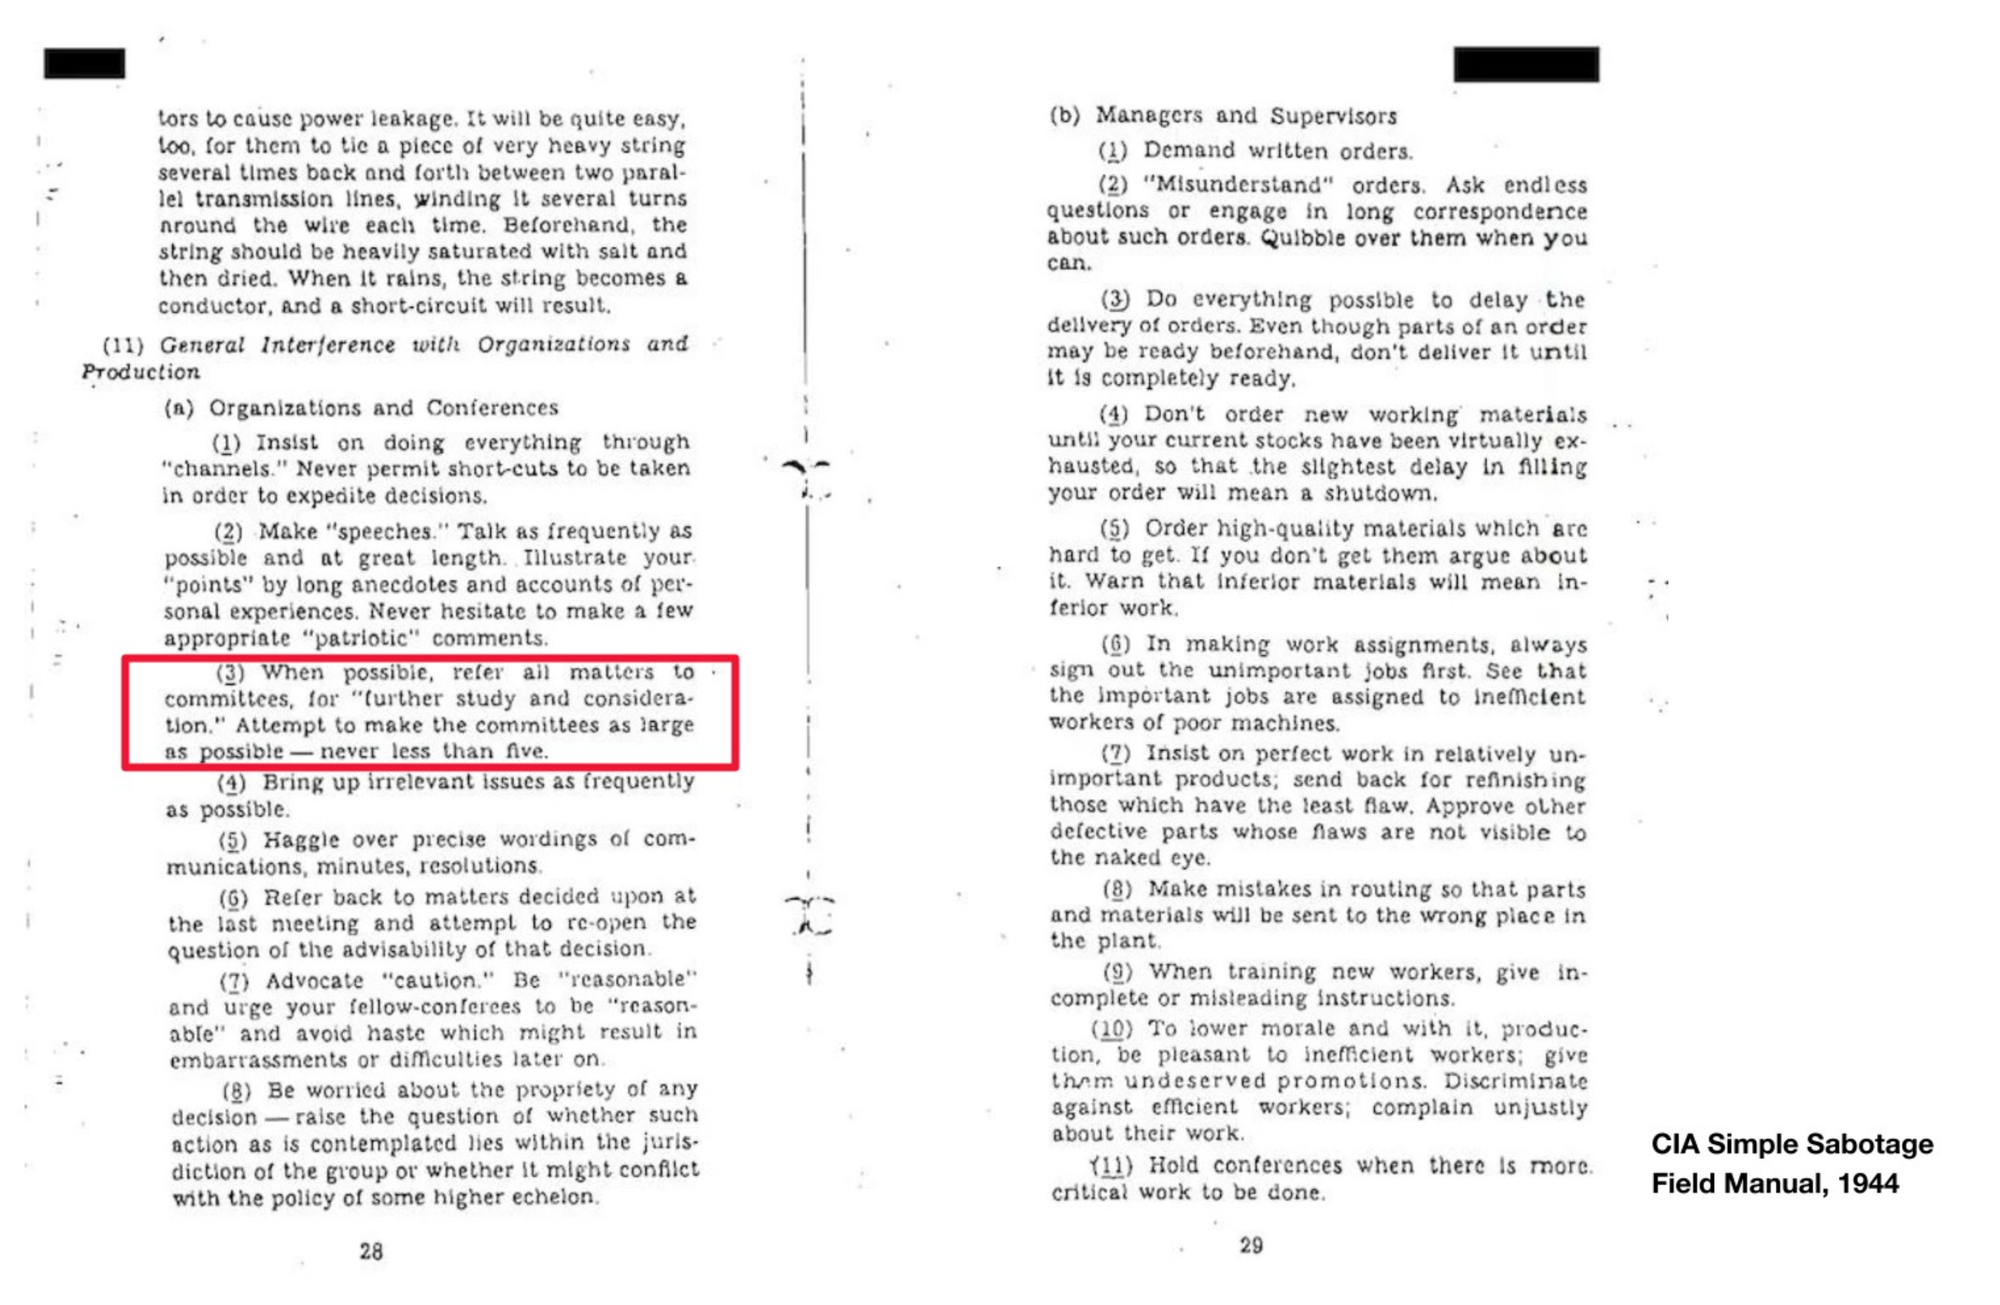 Een screenshot van een pagina uit de CIA Simple Sabotage Field Manual